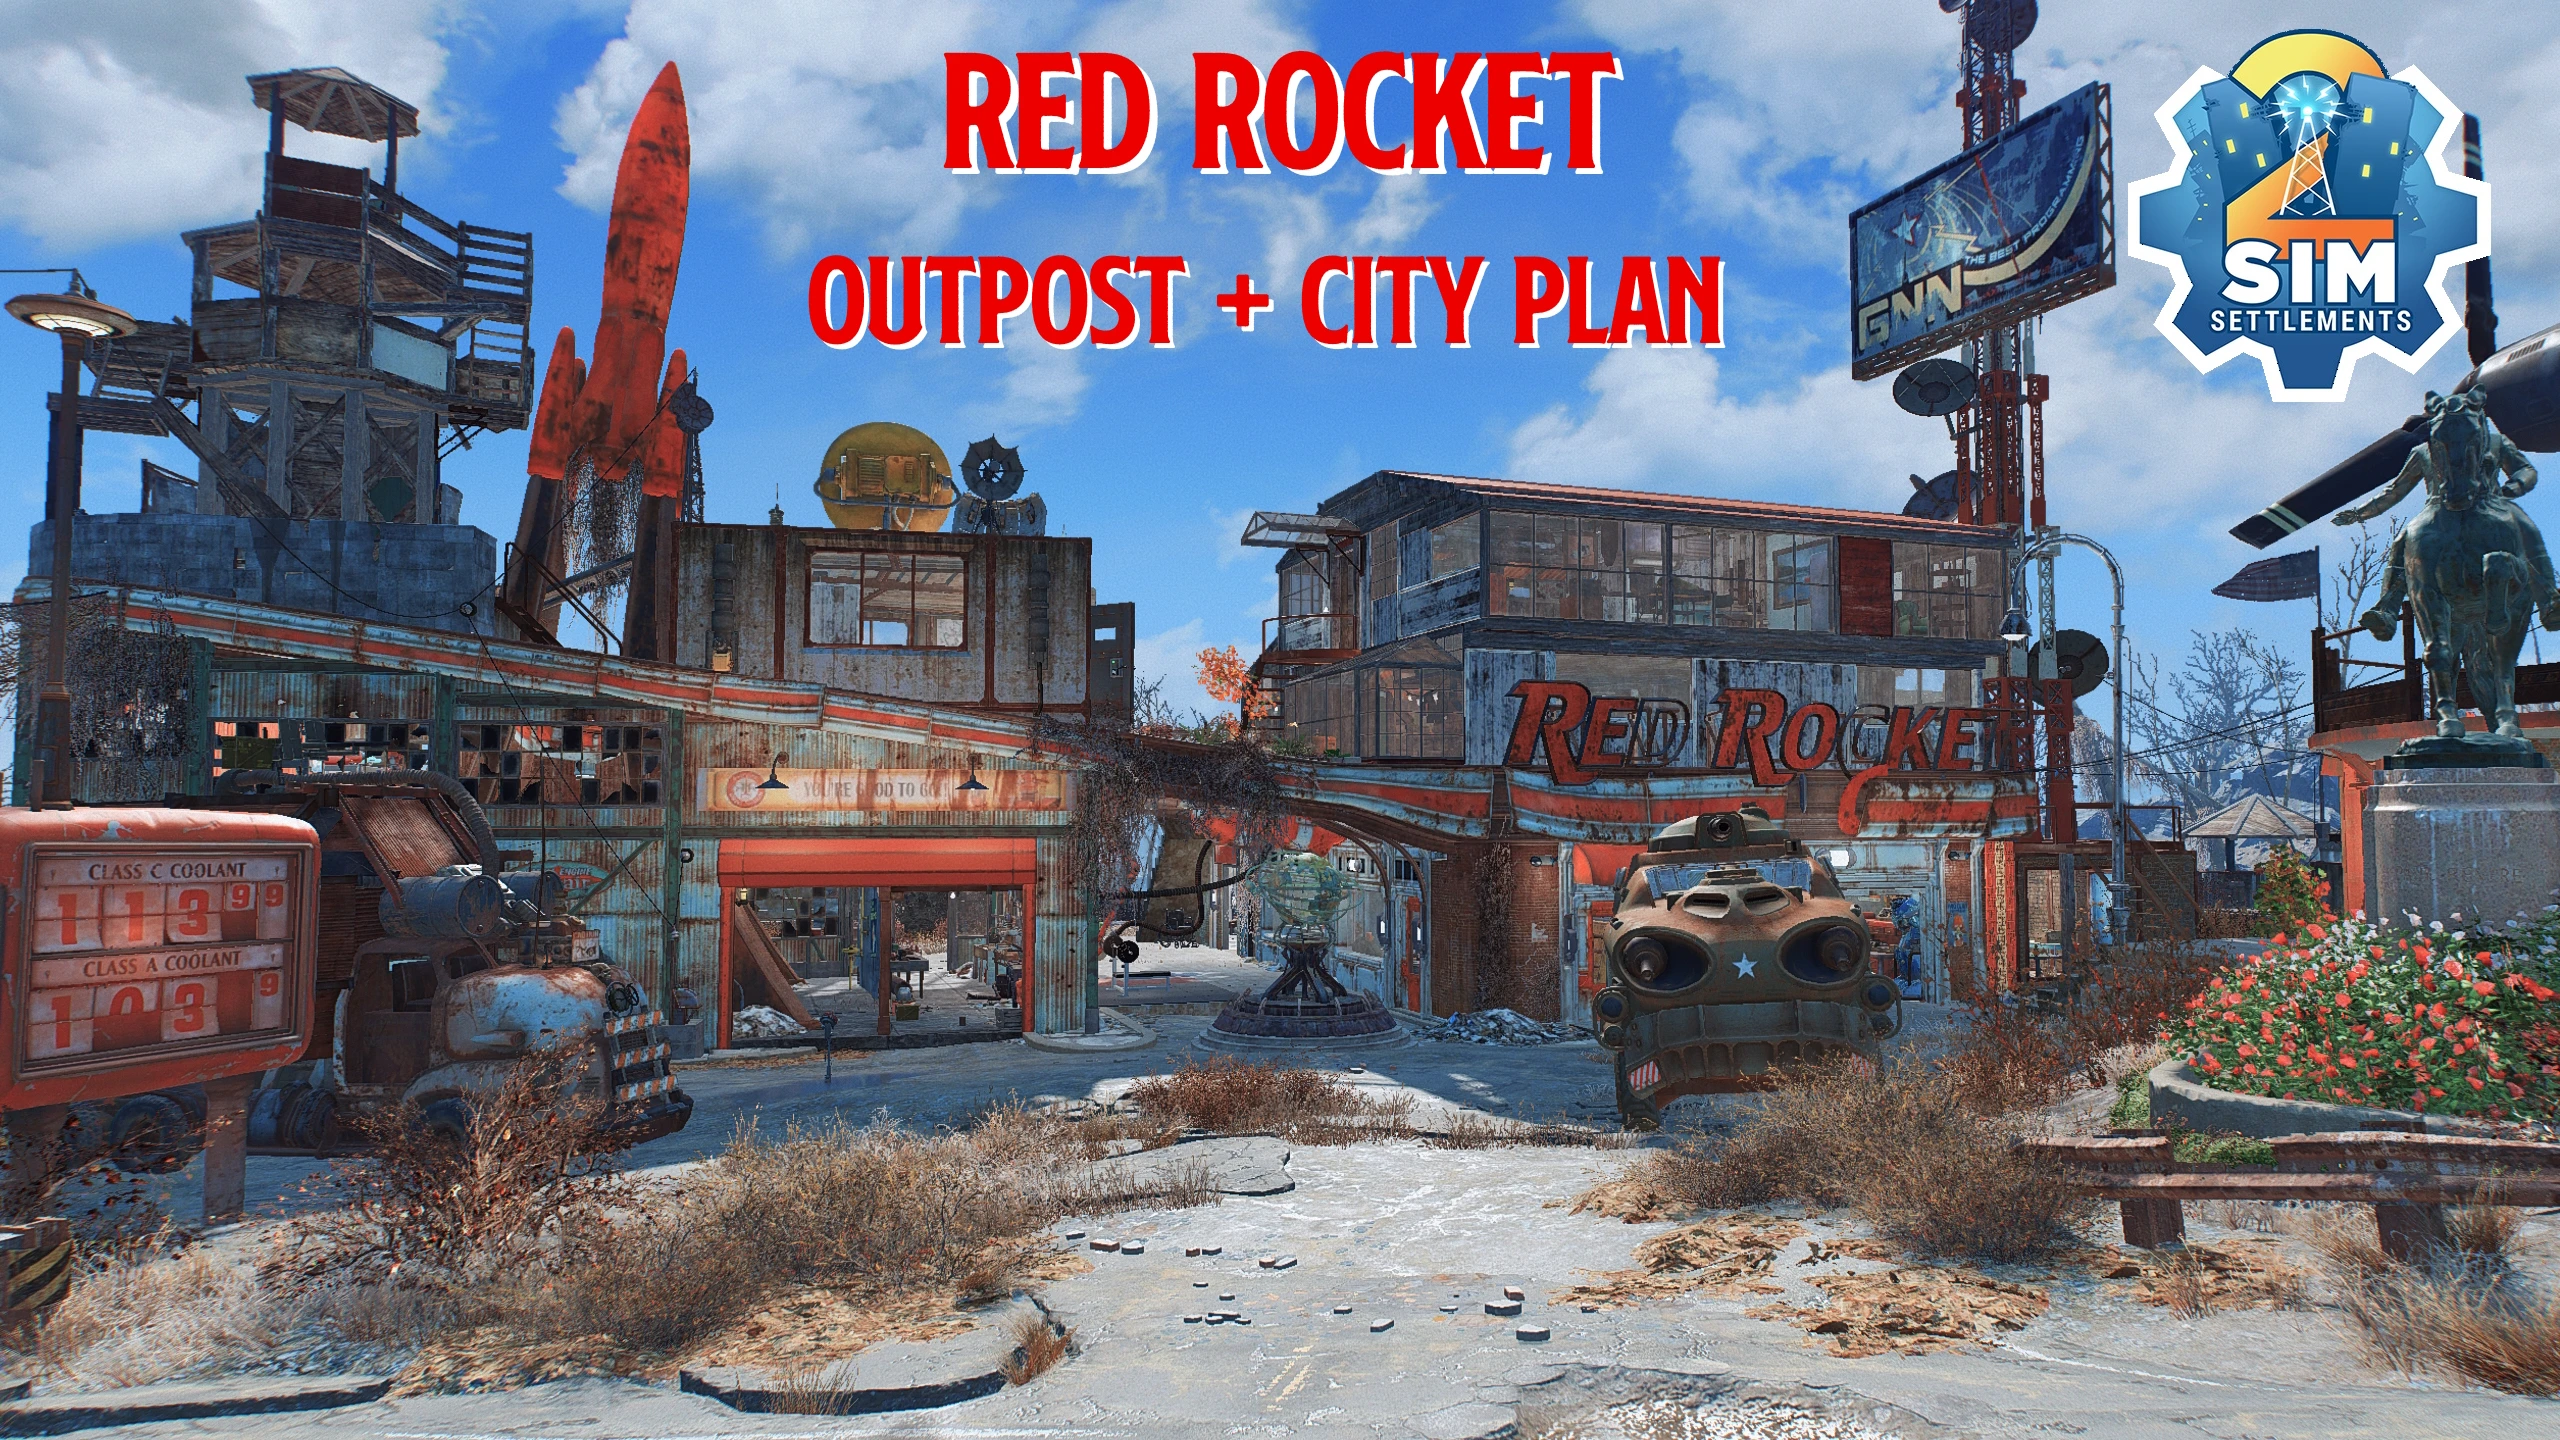 cityplan-outpost-redrocket-gavman.webp